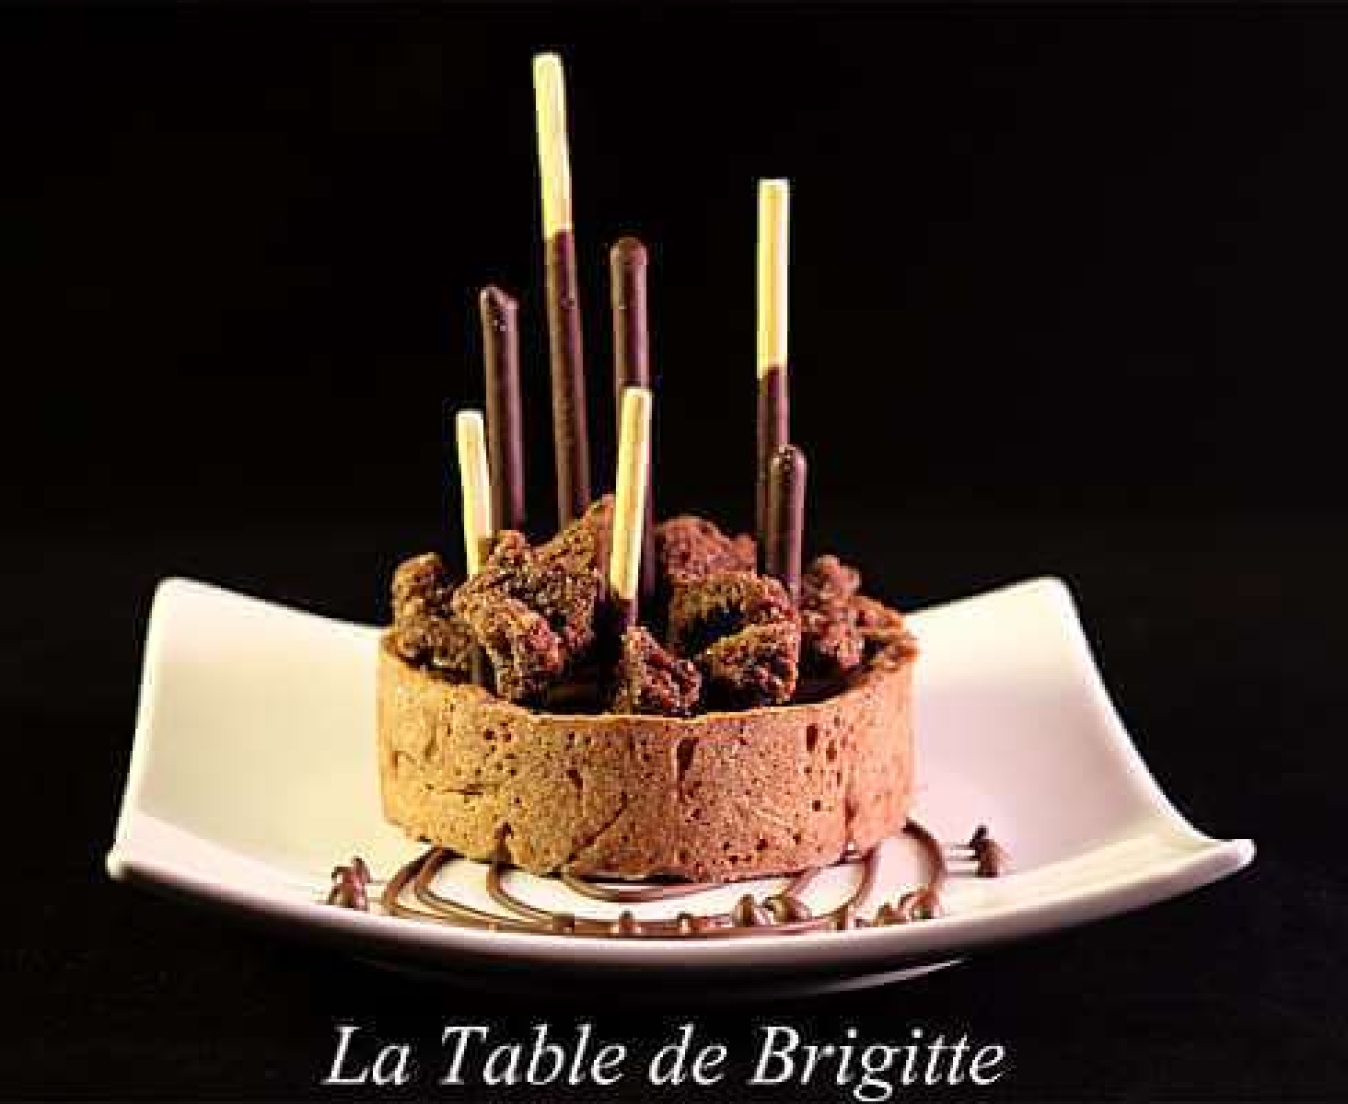 La recette de La table de brigitte : Tartelette tout chocolat